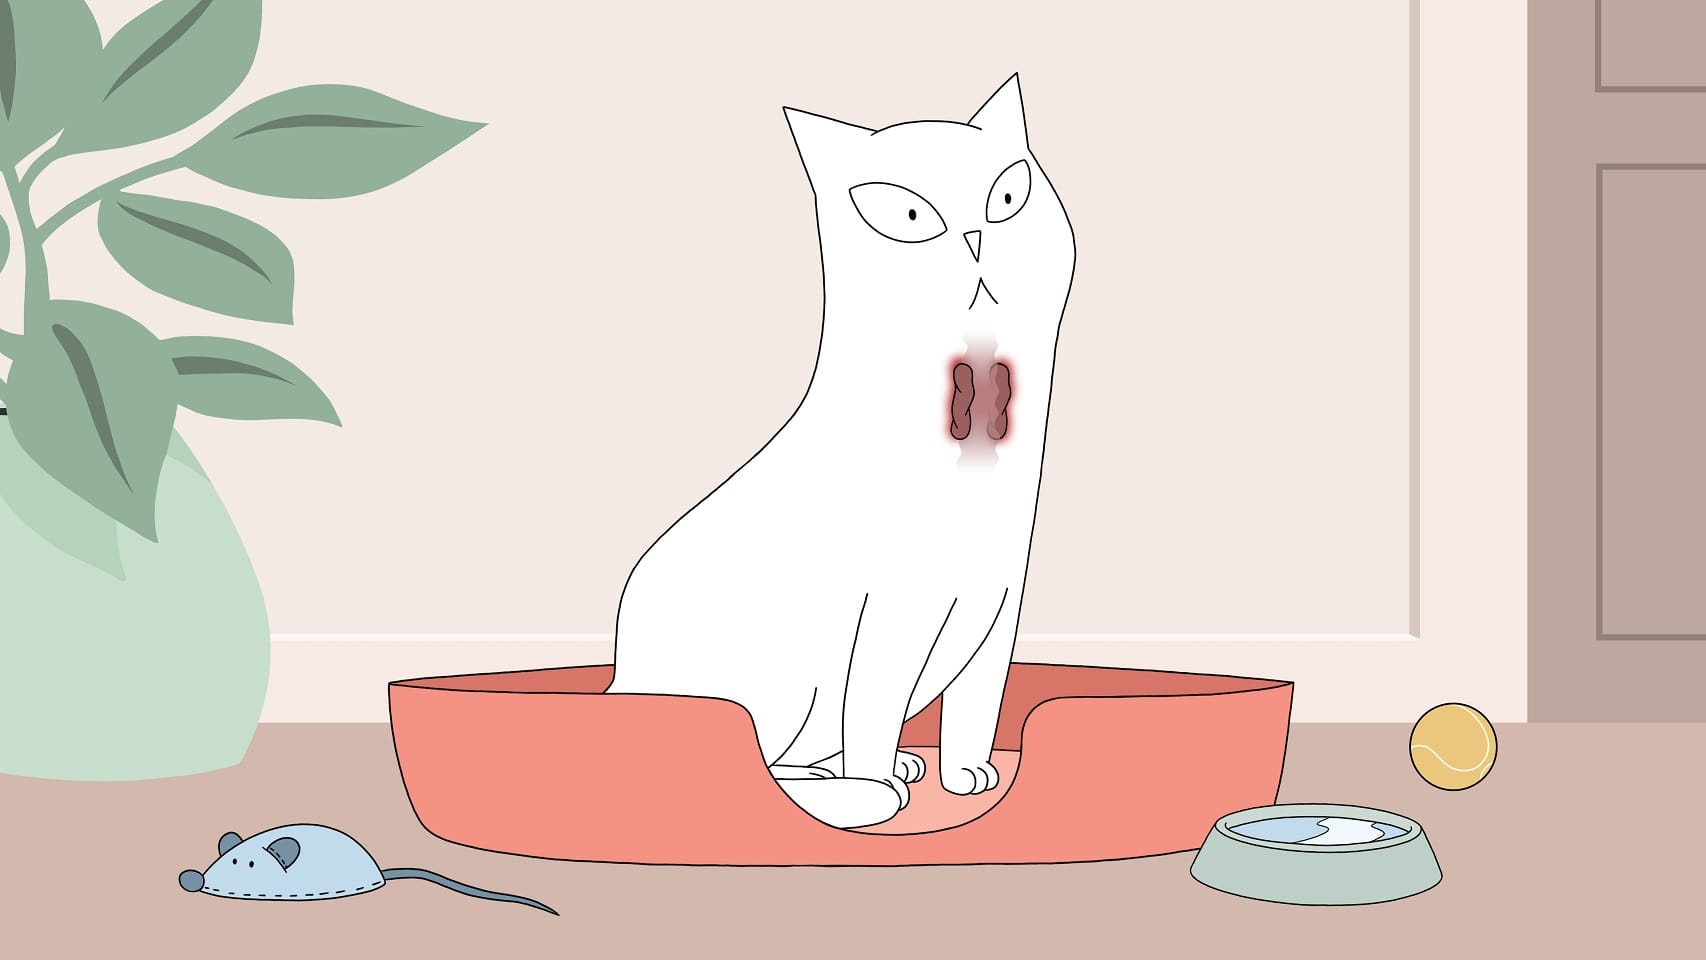 Magas vérnyomással összefüggő pajzsmirigy-túlműködésben szenvedő macska